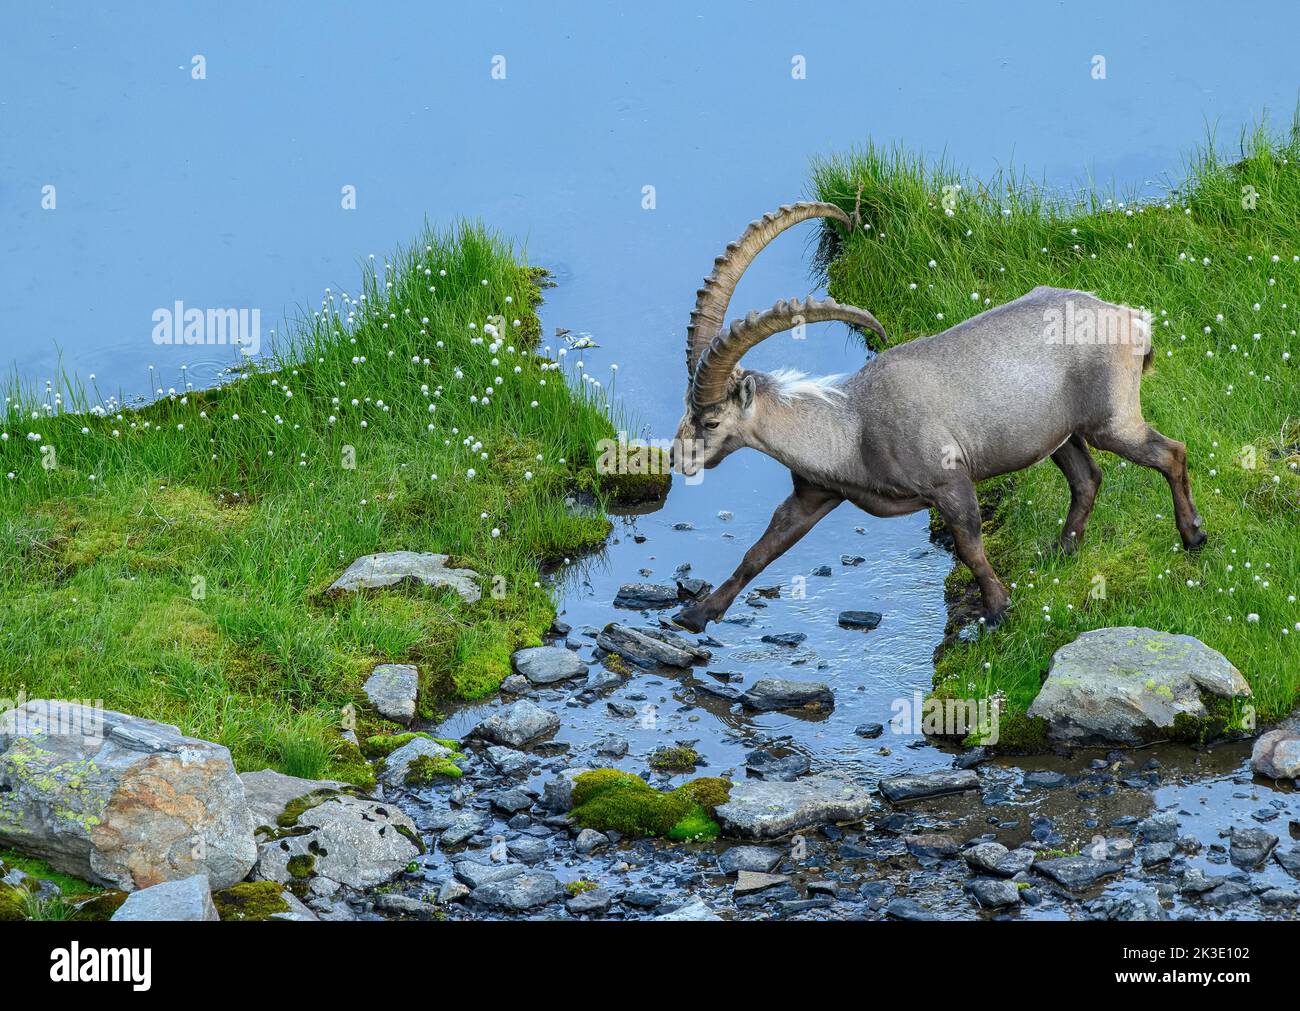 L'ancien ibex alpin mâle, Capra ibex, cosinus un canal au bord du lac dans un pâturage de boghguy alpin élevé en soirée. Alpes suisses. Banque D'Images